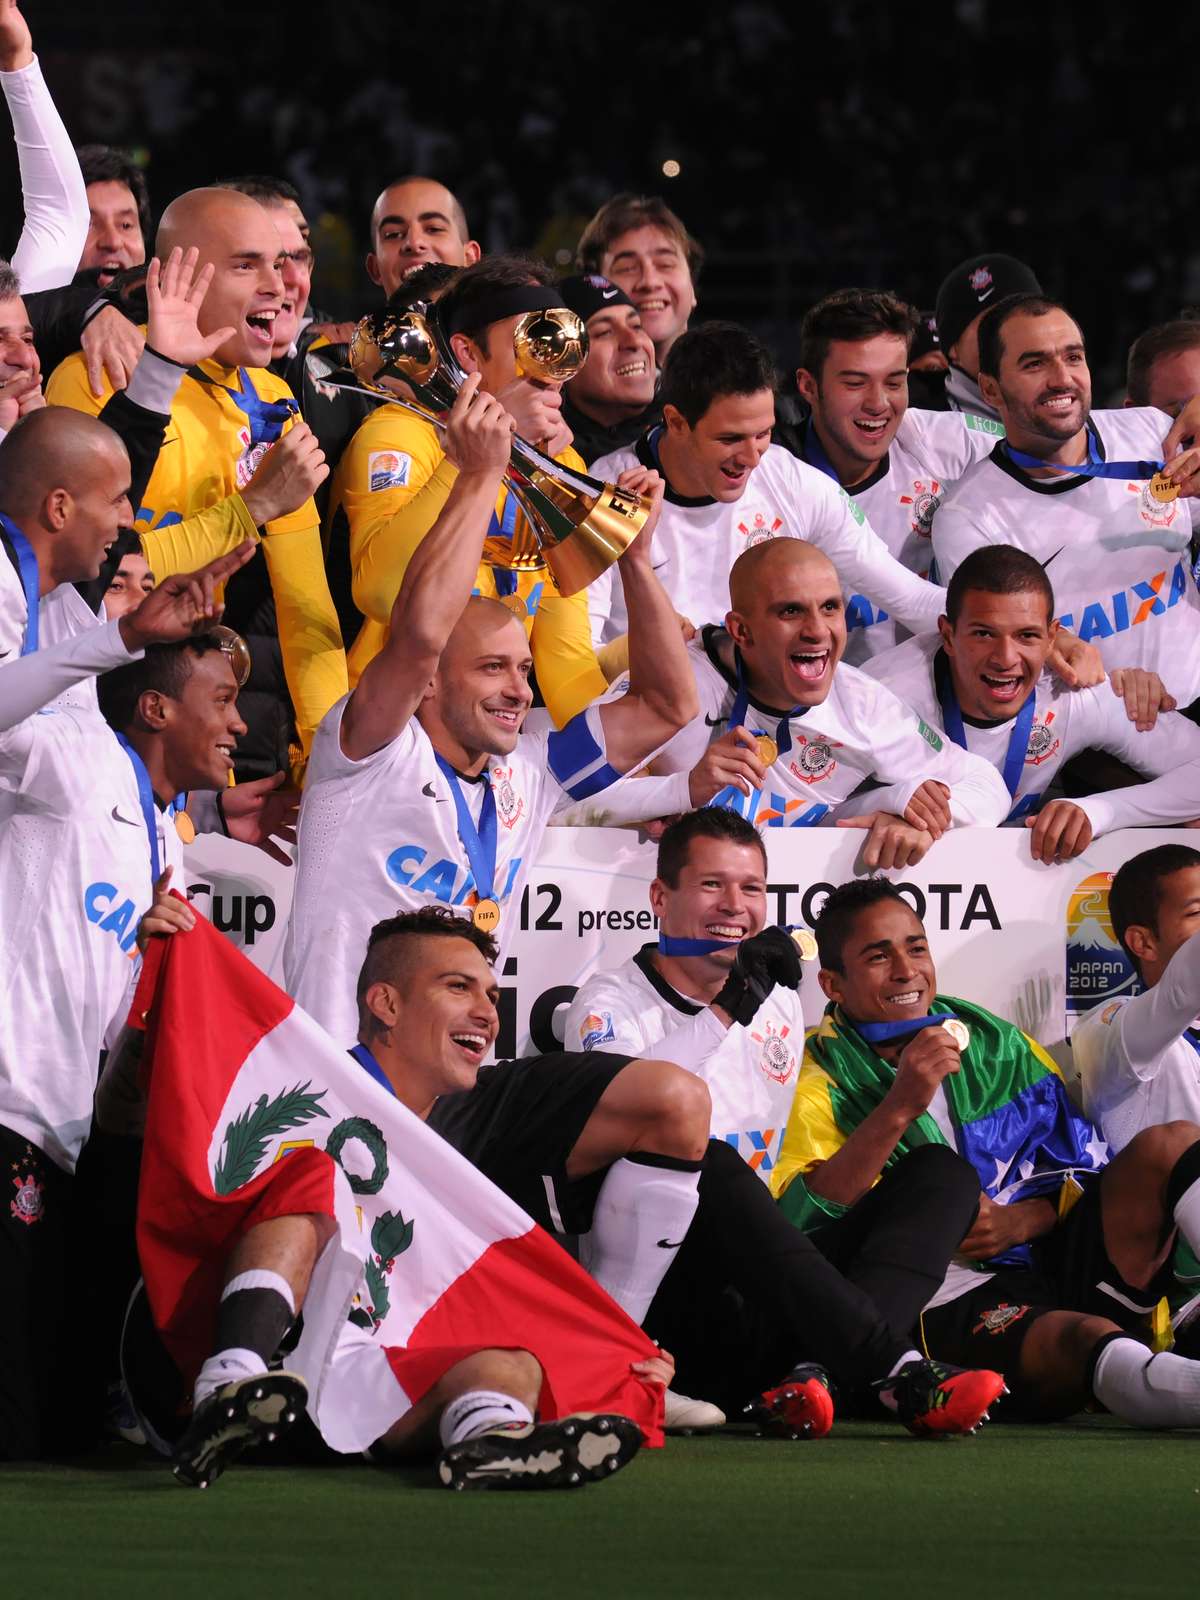 Douglas Santos comemora primeiro título com o Zenit: Oficialmente campeão  - Gazeta Esportiva